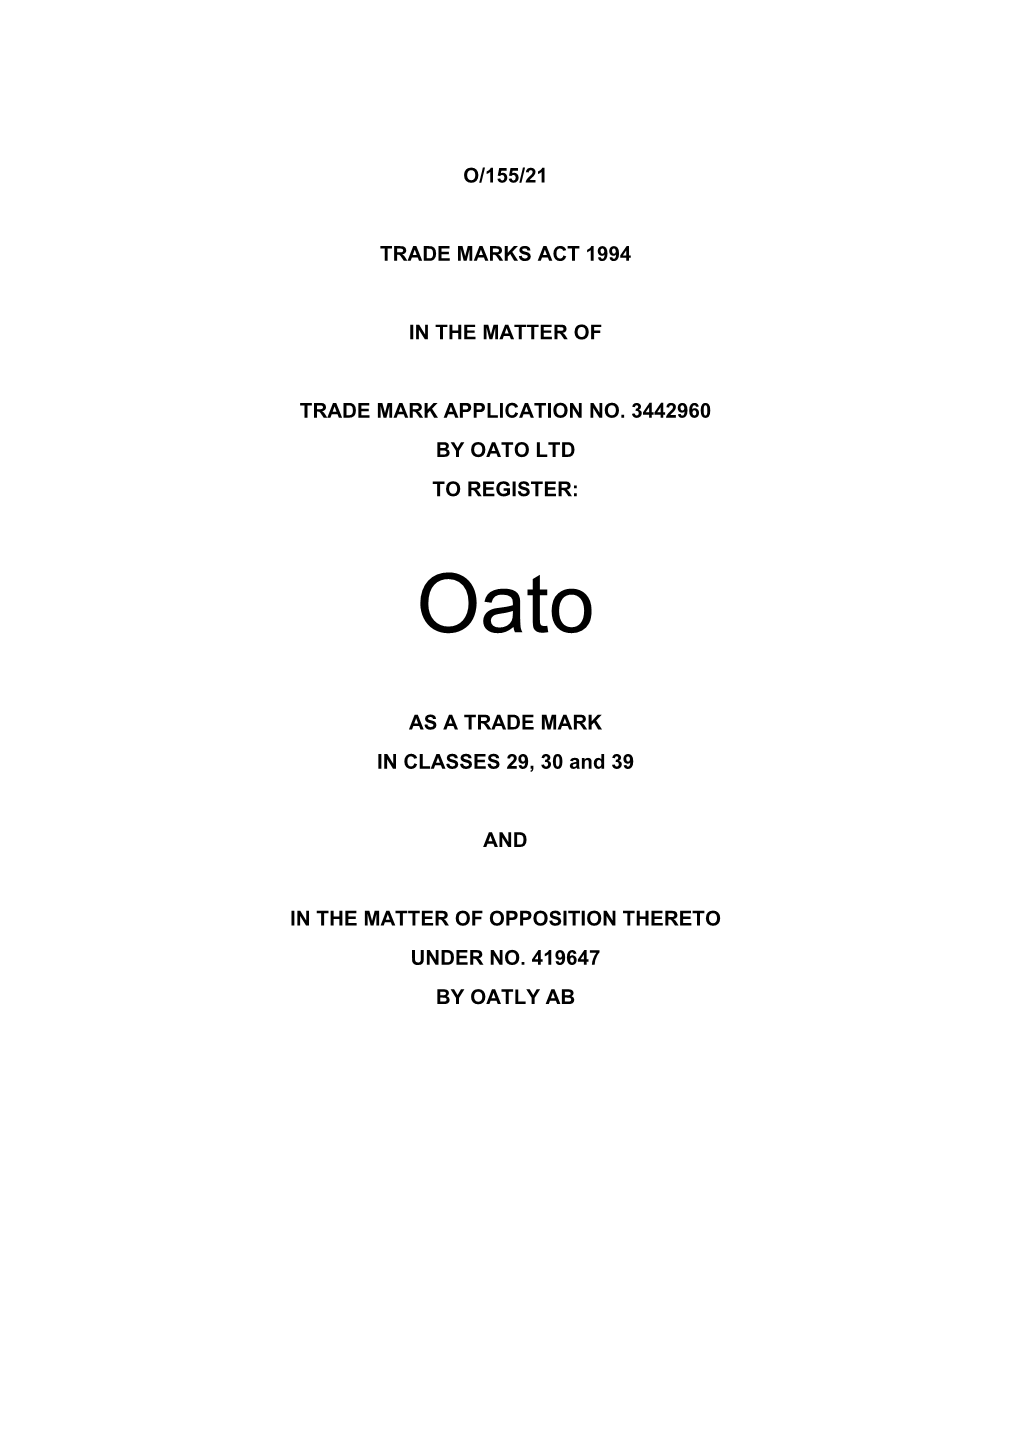 Oato Ltd to Register